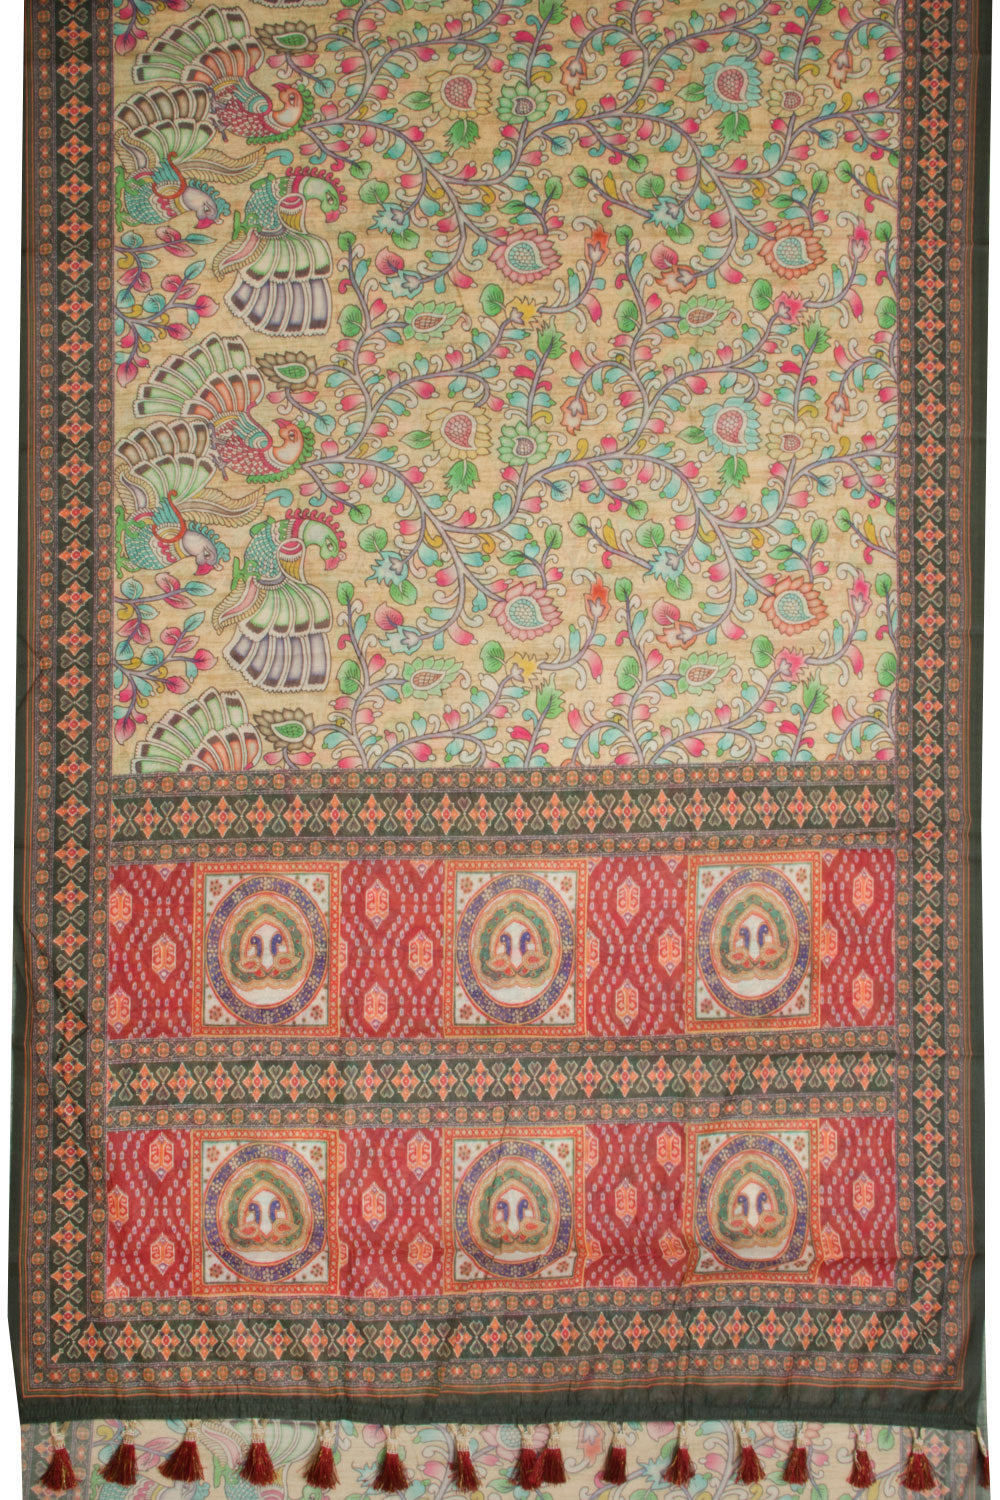 Printed Malai Cotton Kalamkari Saree - Avishya